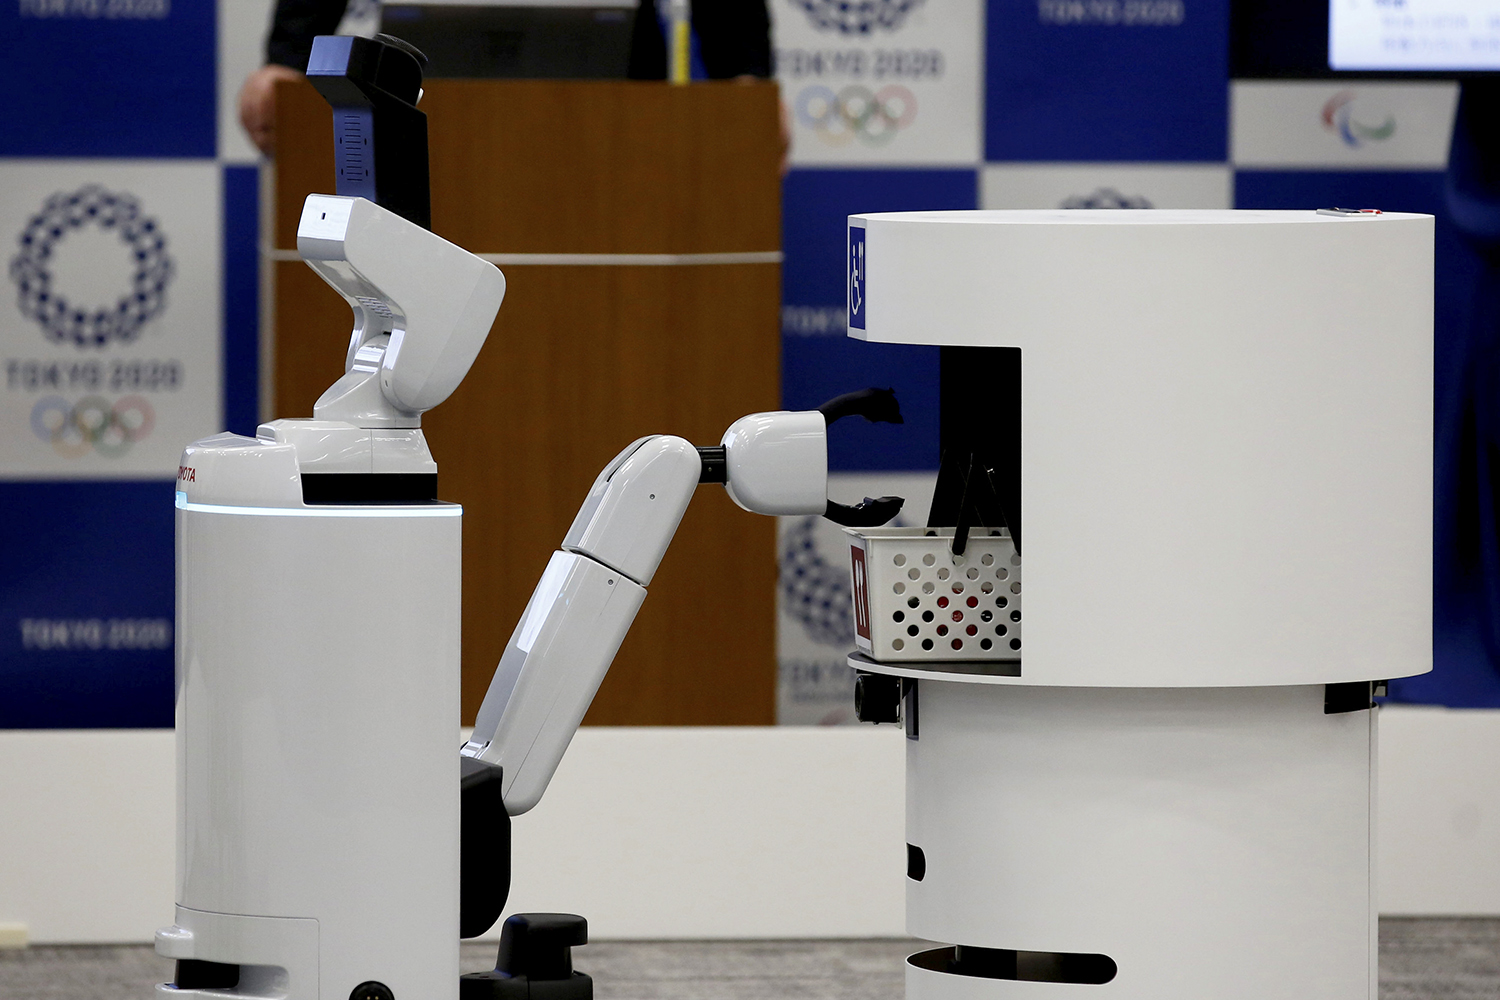 Robôs apresentam candidatura de Tóquio aos Jogos de 2020